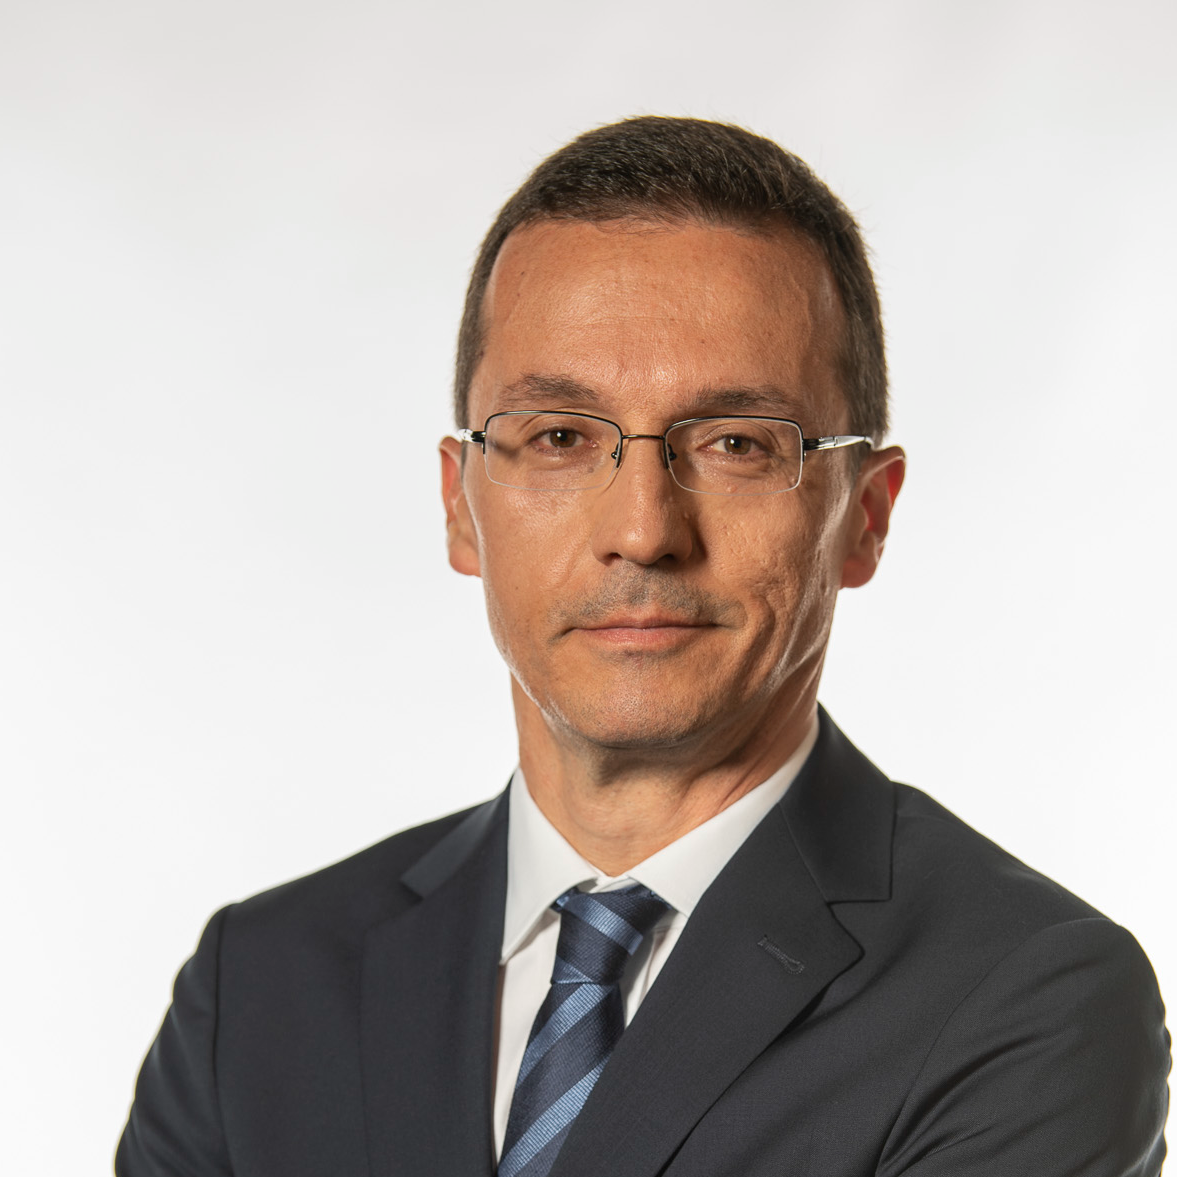 Dinçer Güleyin - Mercer Doğu Akdeniz Bölgesi,CEO/ President Mercer Turkey